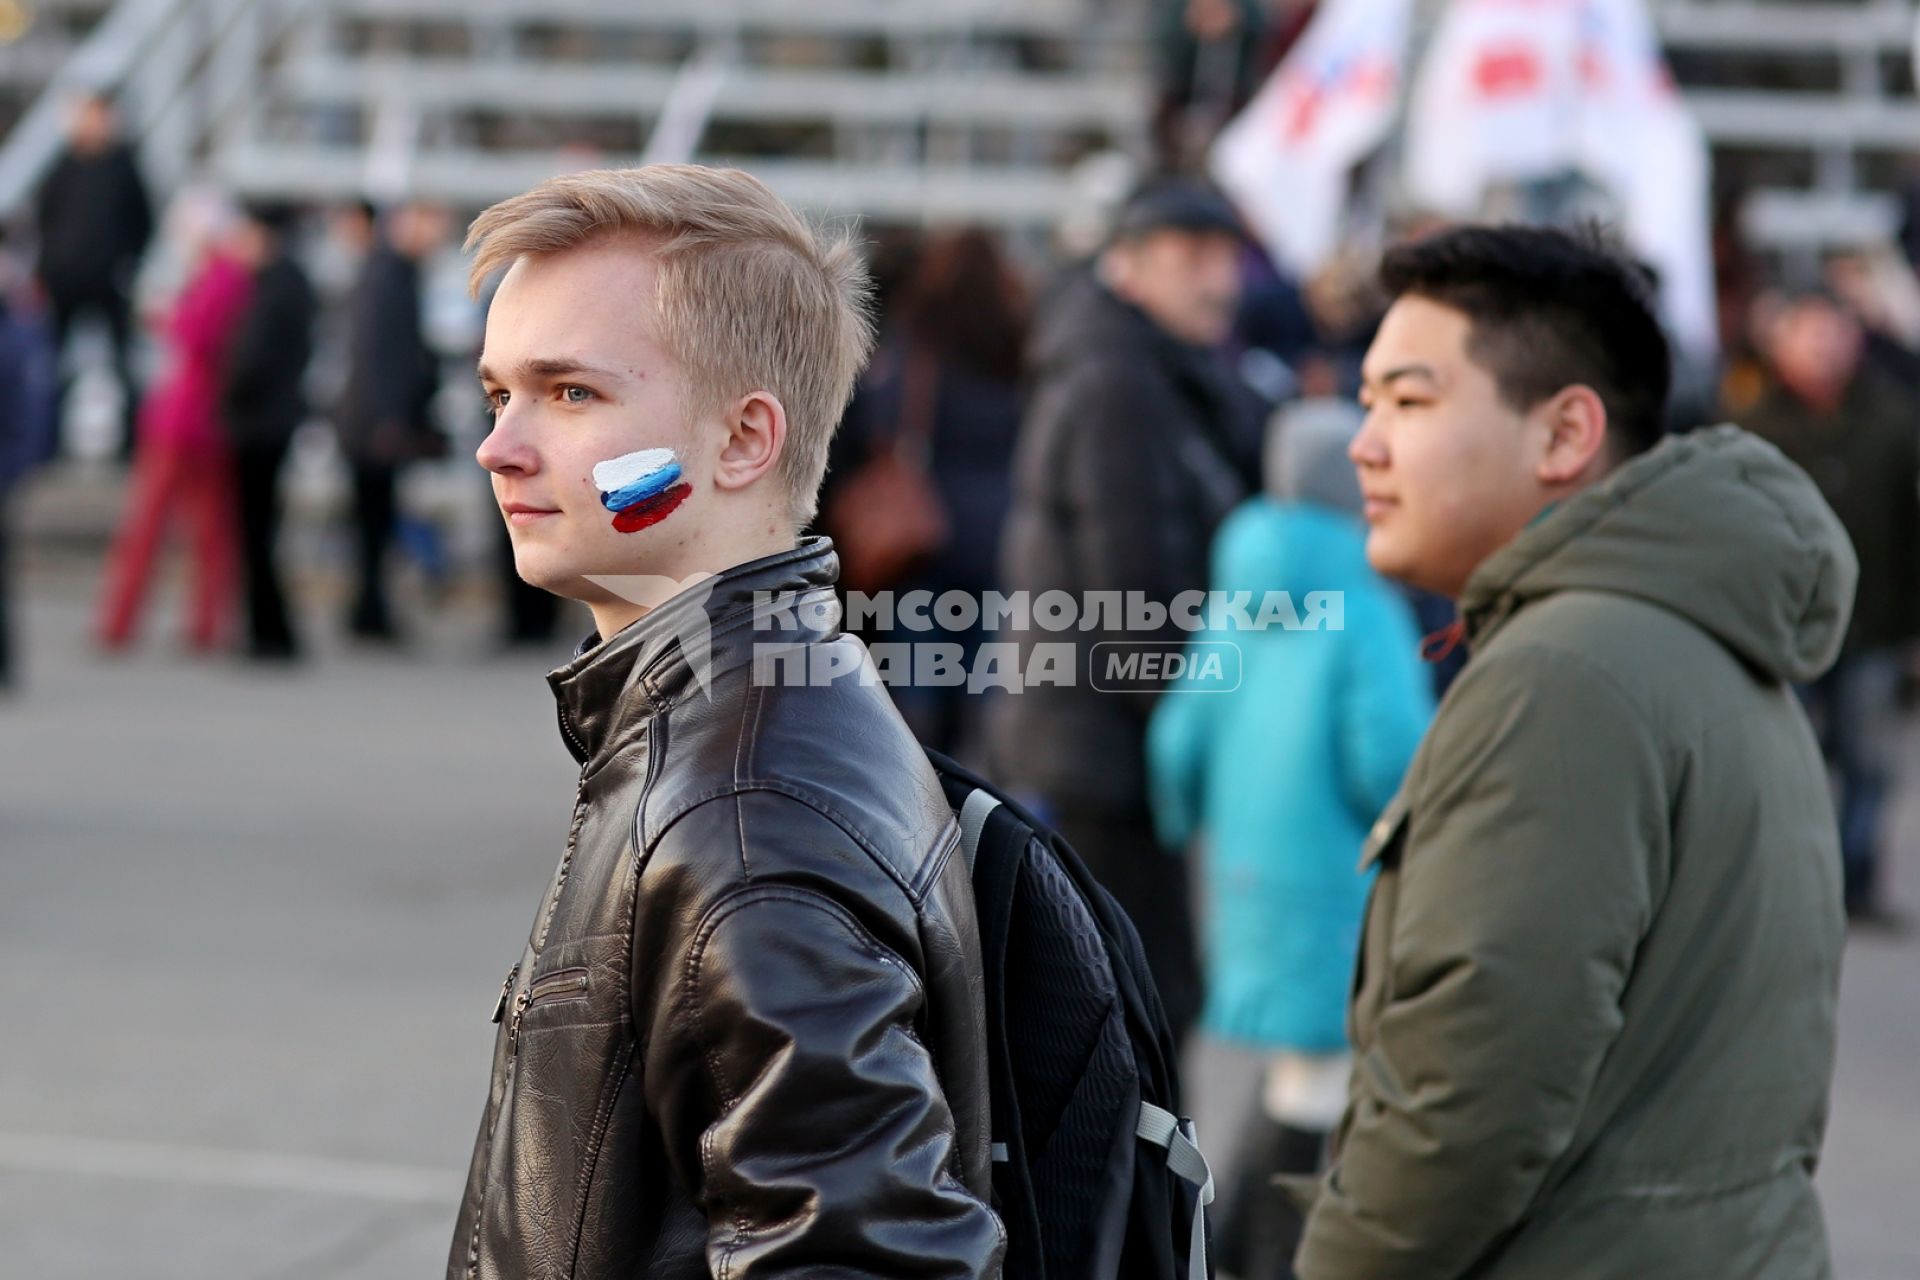 Саратов. Праздничный митинг в честь годовщины воссоединения Крыма и Севастополя с Россией.